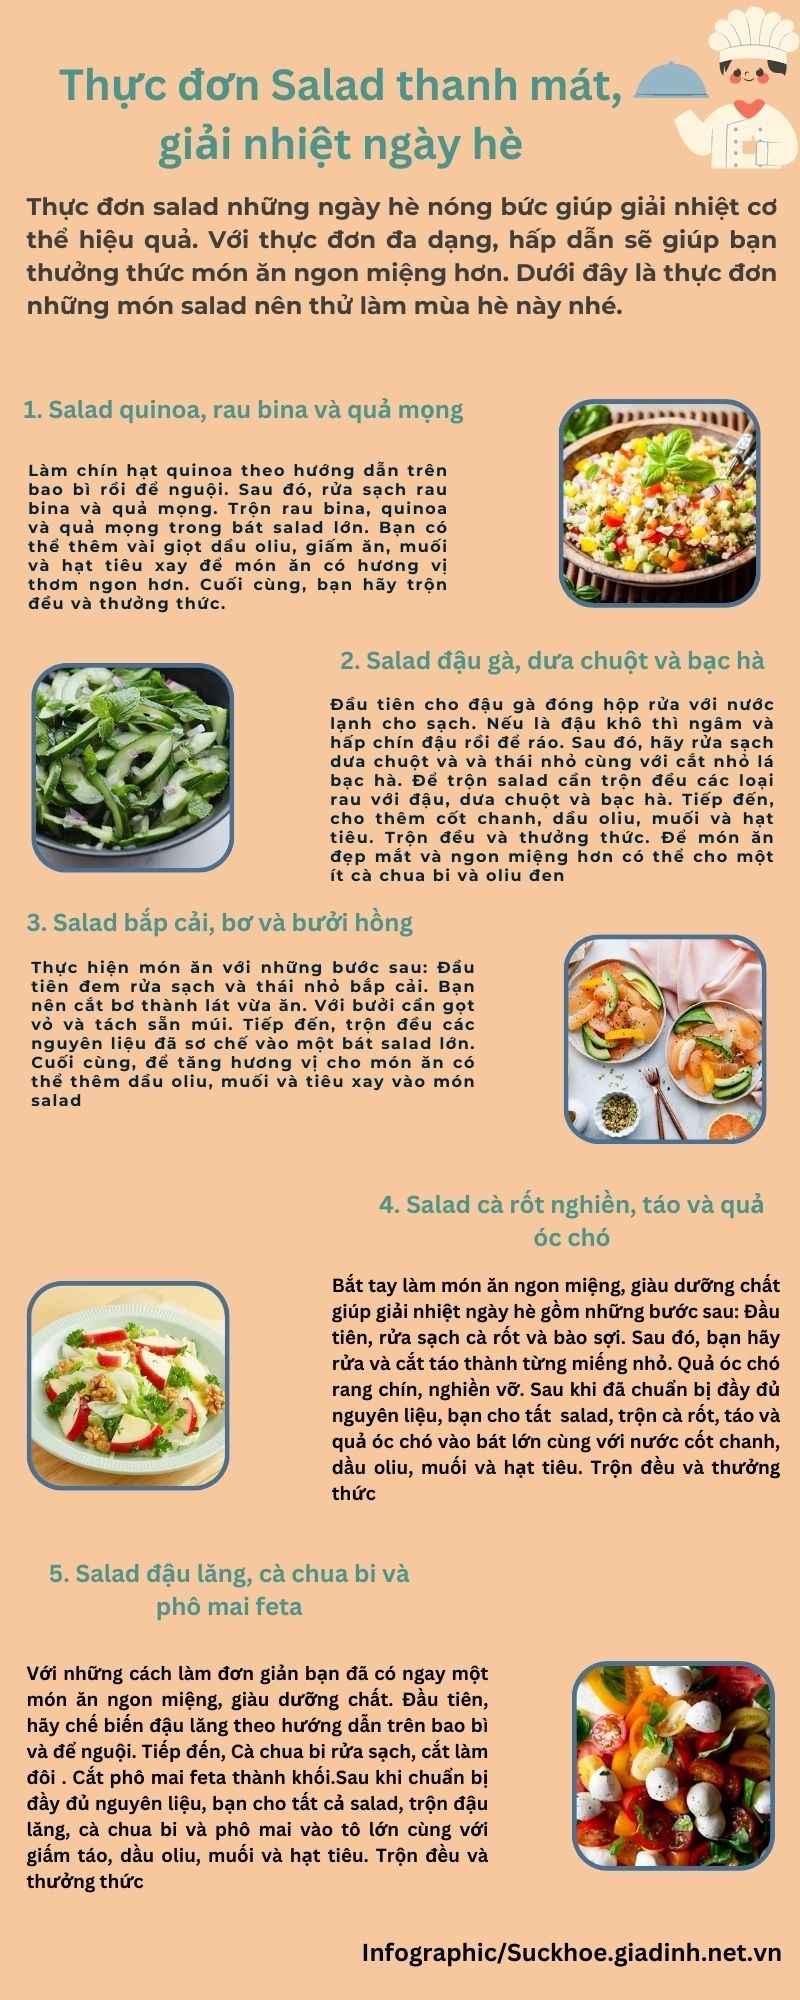 Thực đơn salad ngon miệng đơn giản dễ làm thanh mát, giải nhiệt mùa hè - Ảnh 1.